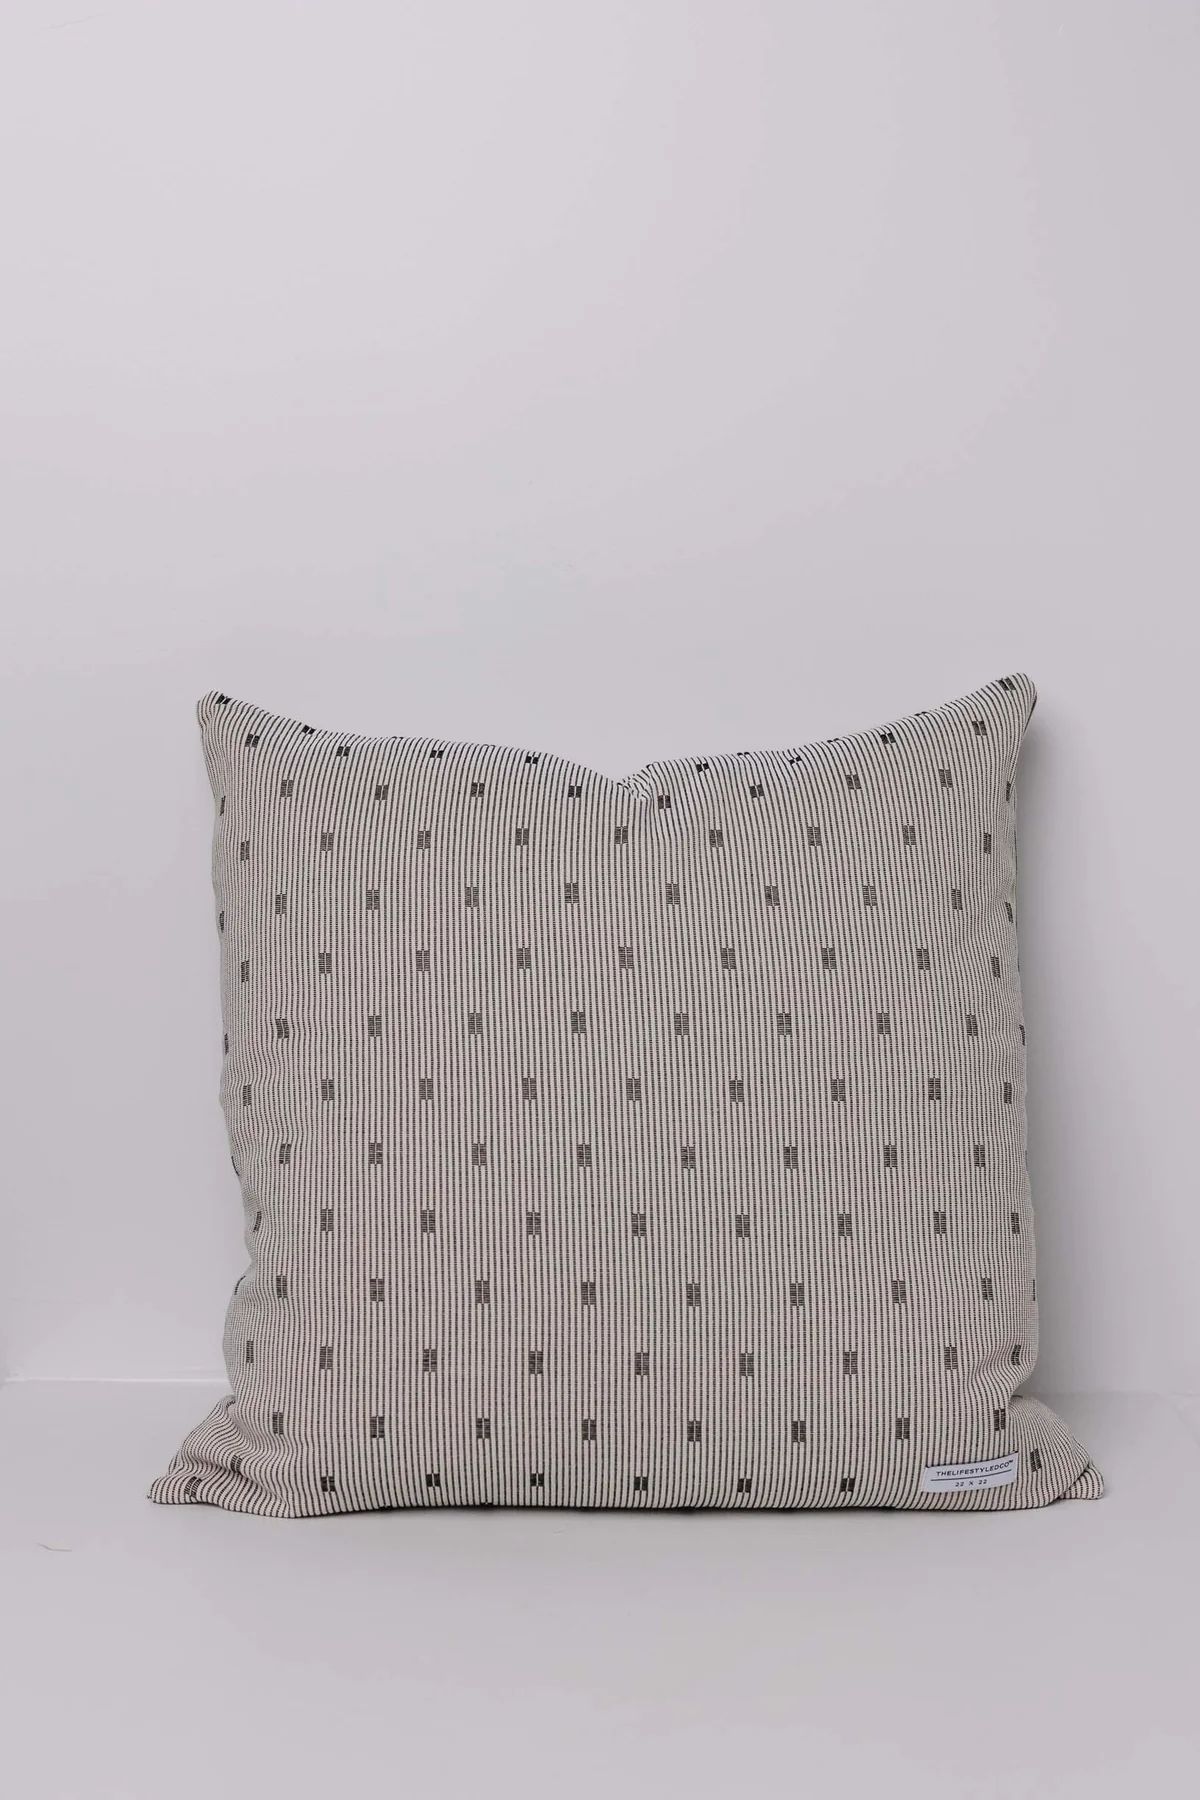 Scanlon Woven Newsprint Pillow - 2 Sizes | THELIFESTYLEDCO